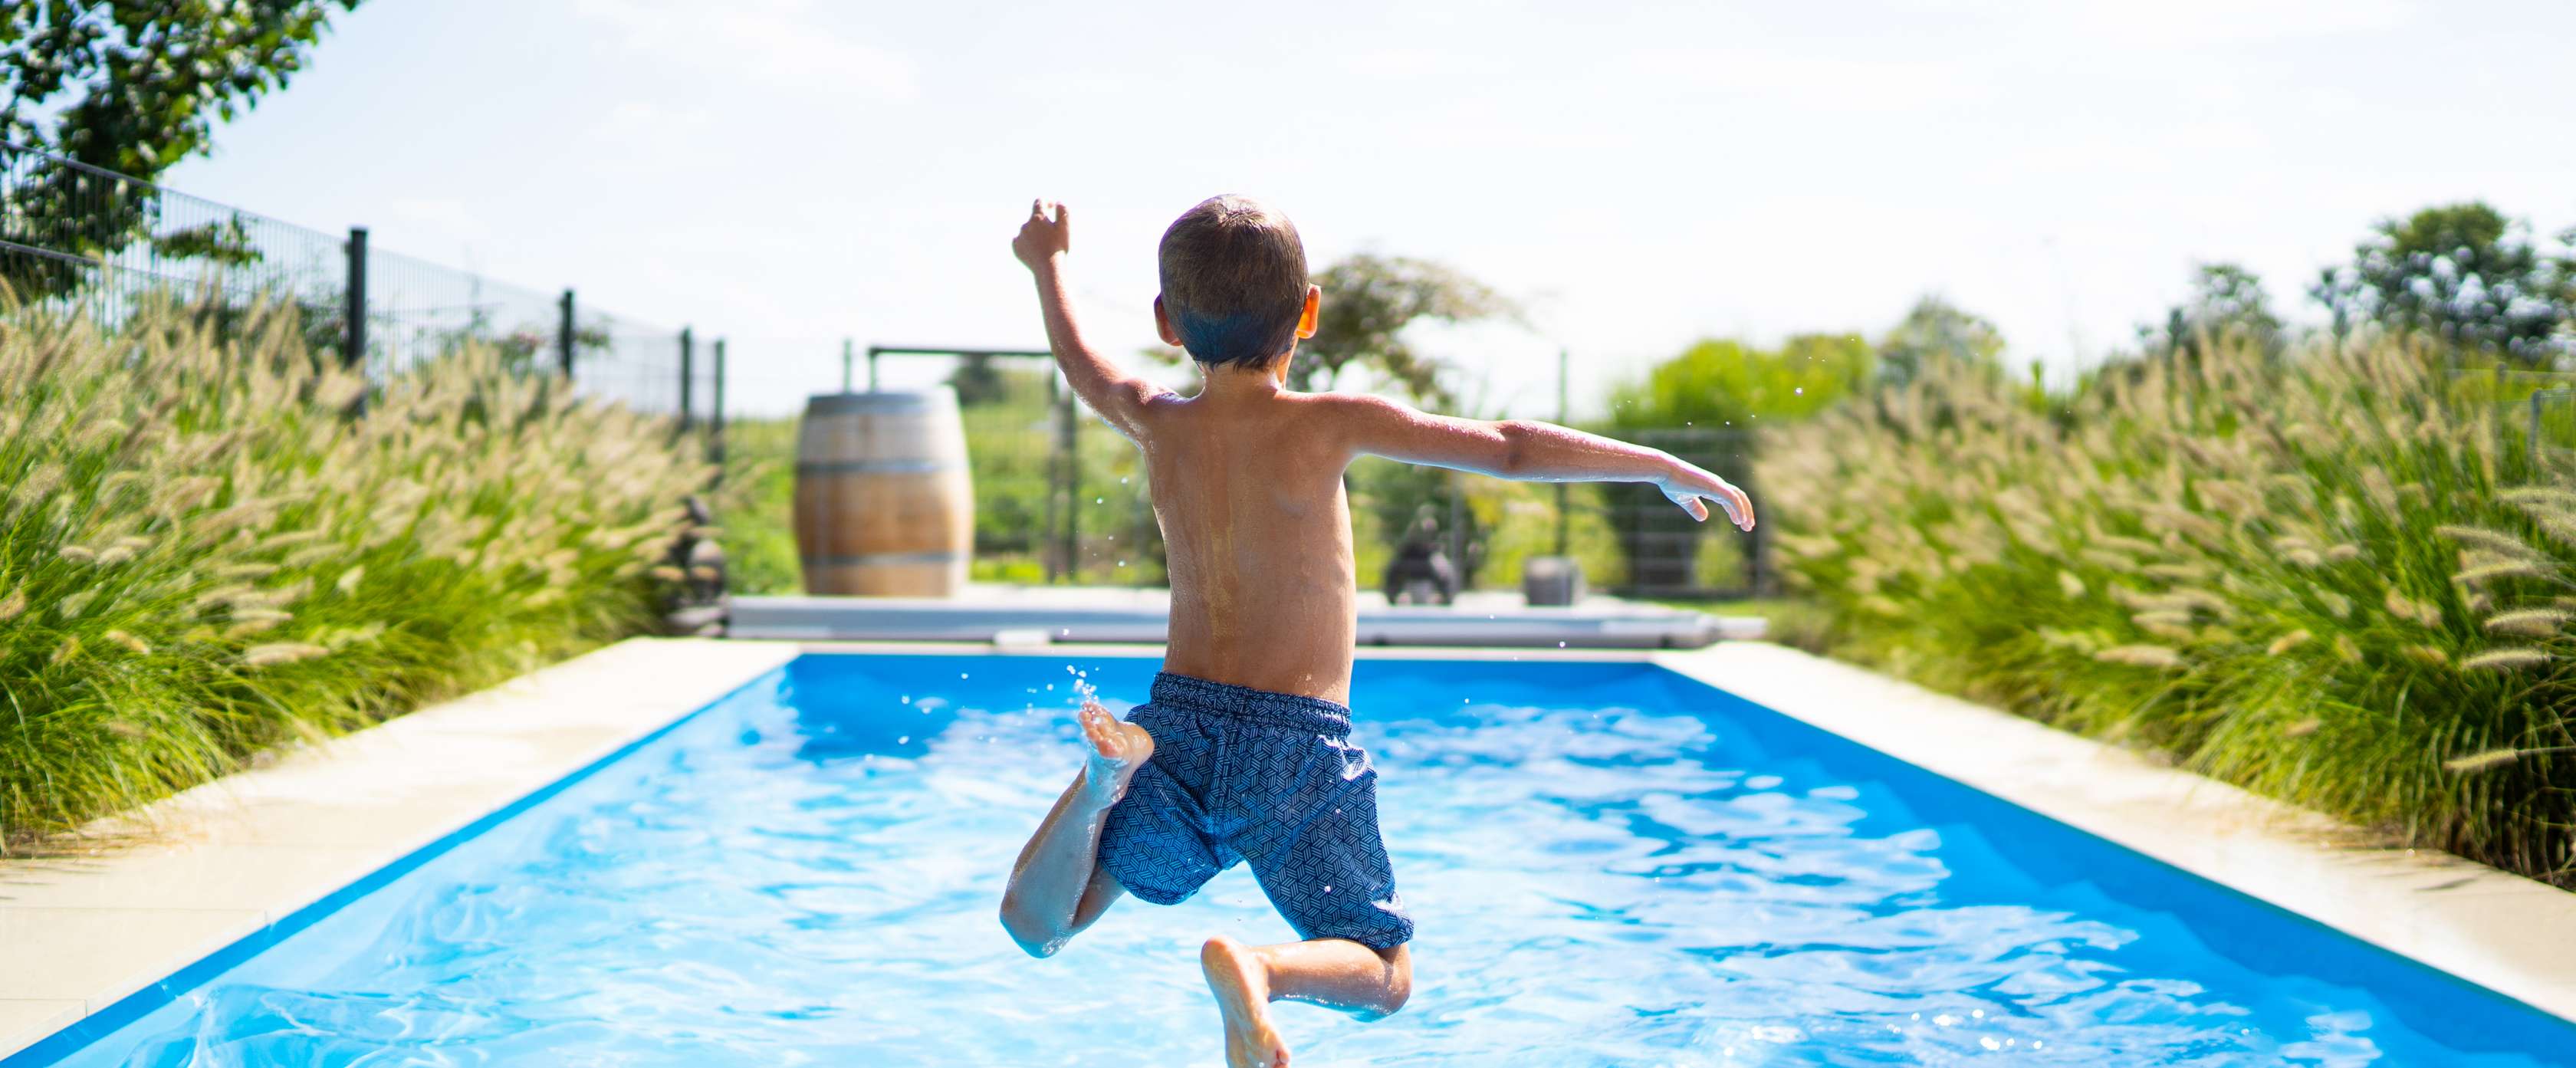 Junge springt in einen Pool.